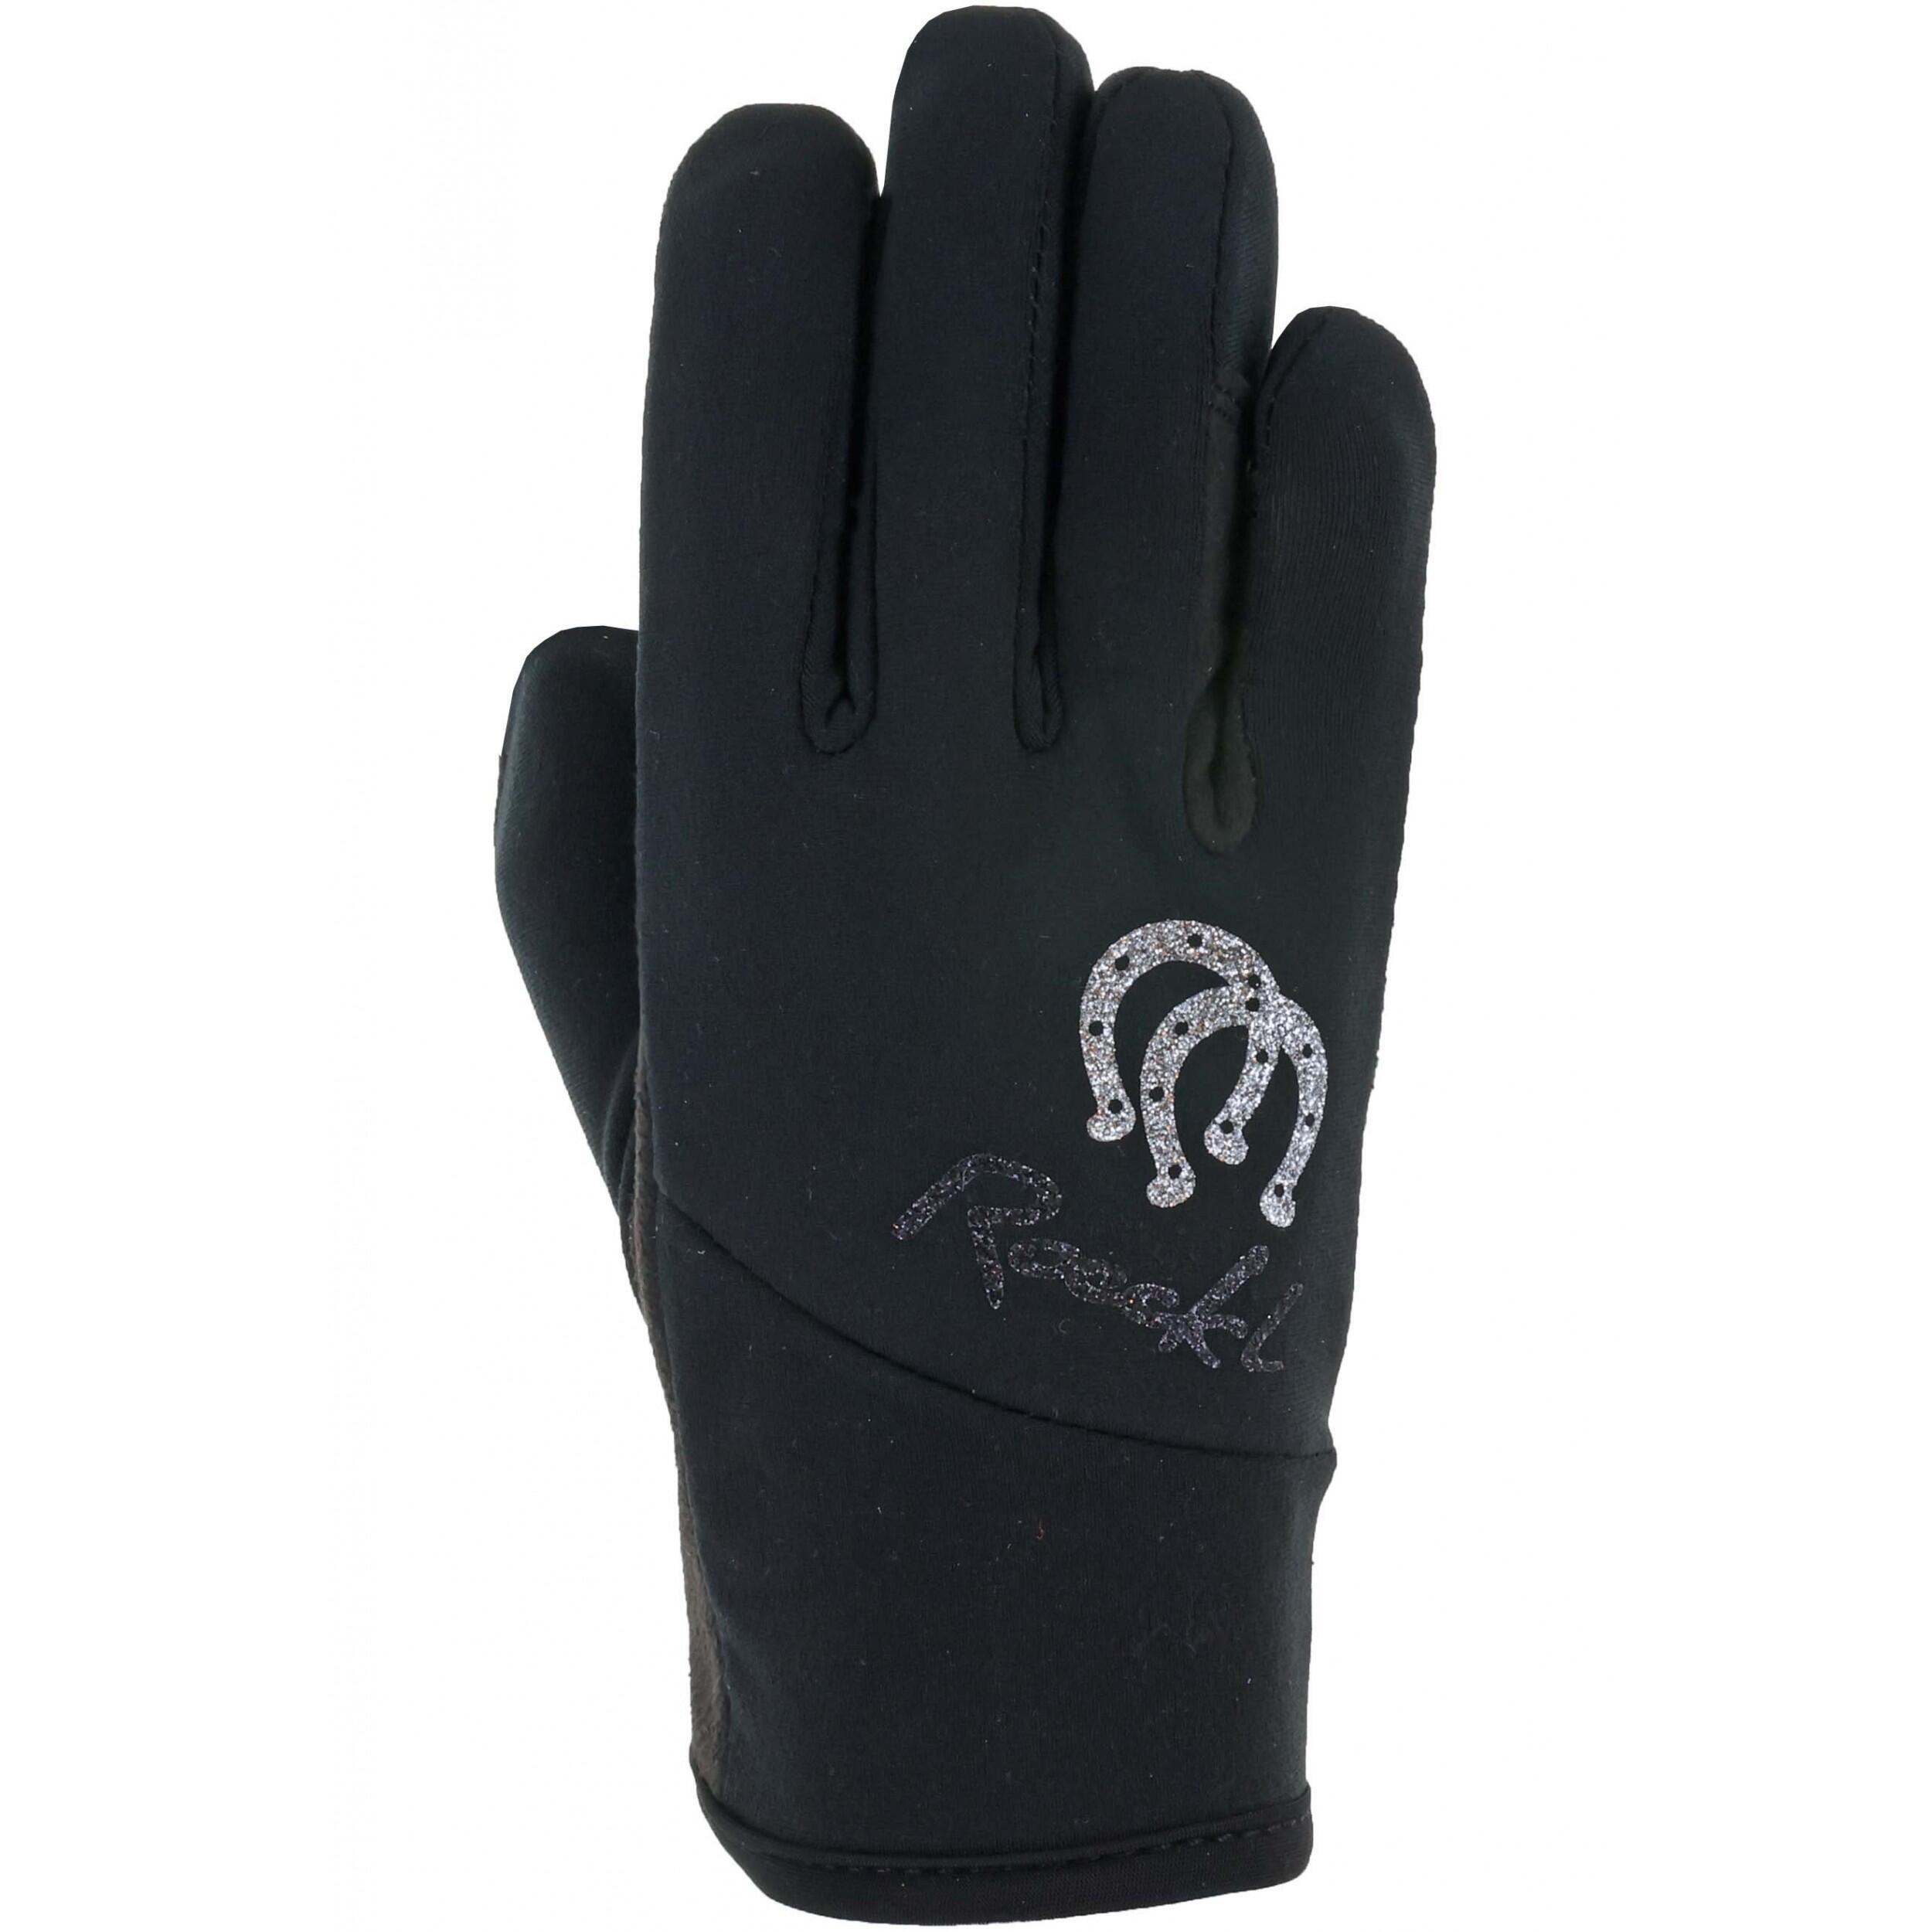 Перчатки Roeckl детские для верховой езды, черный перчатки для верховой езды miami roeckl черный